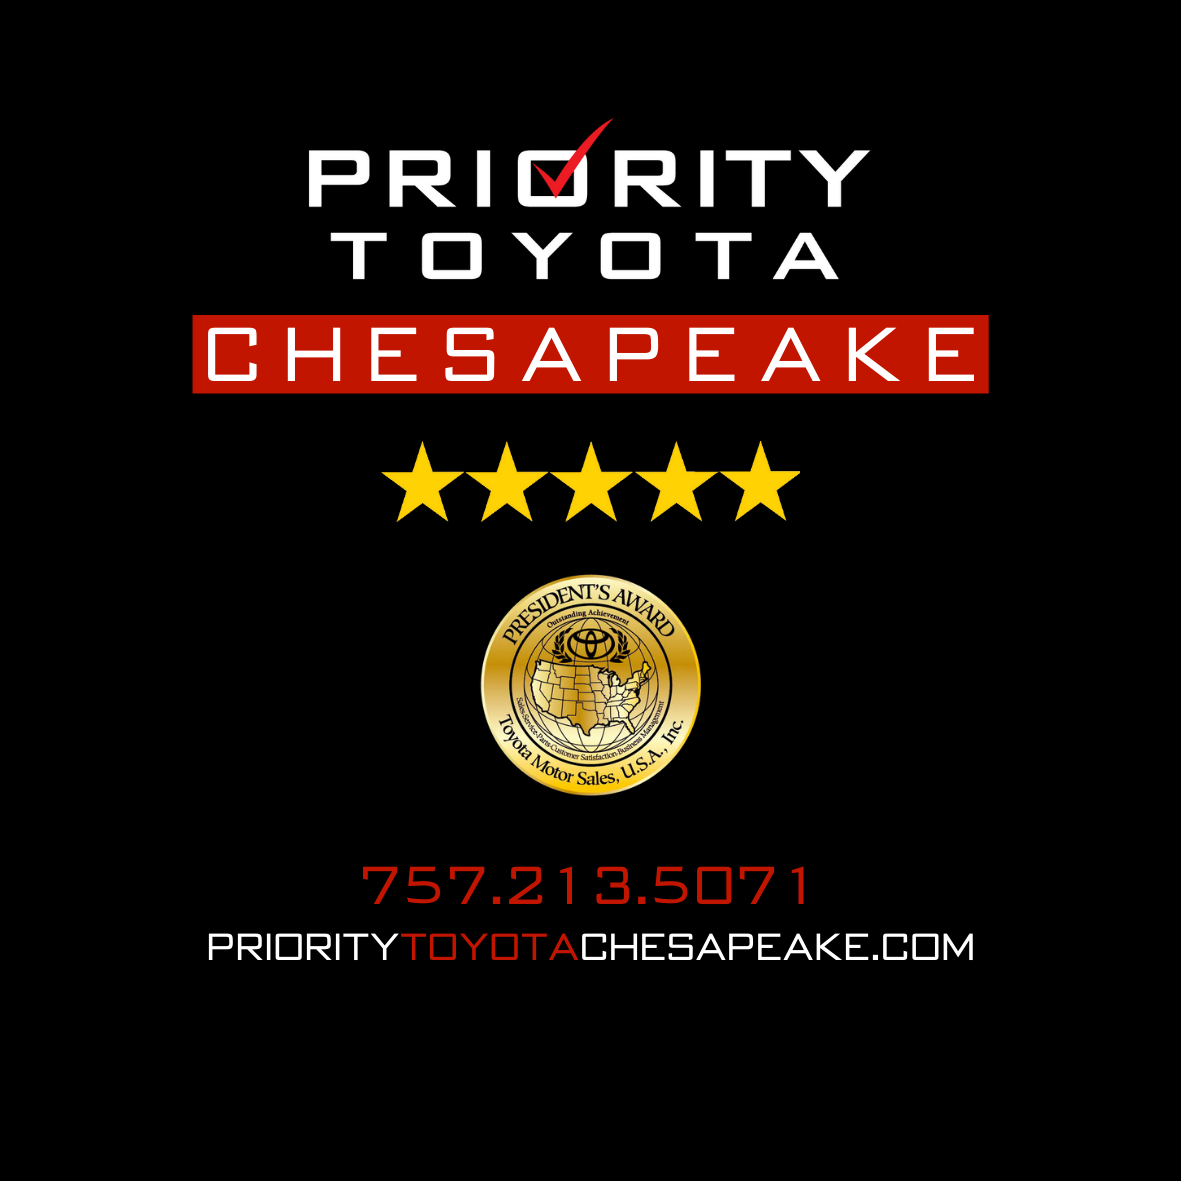 Priority Toyota Chesapeake serving Virginia Beach, VA